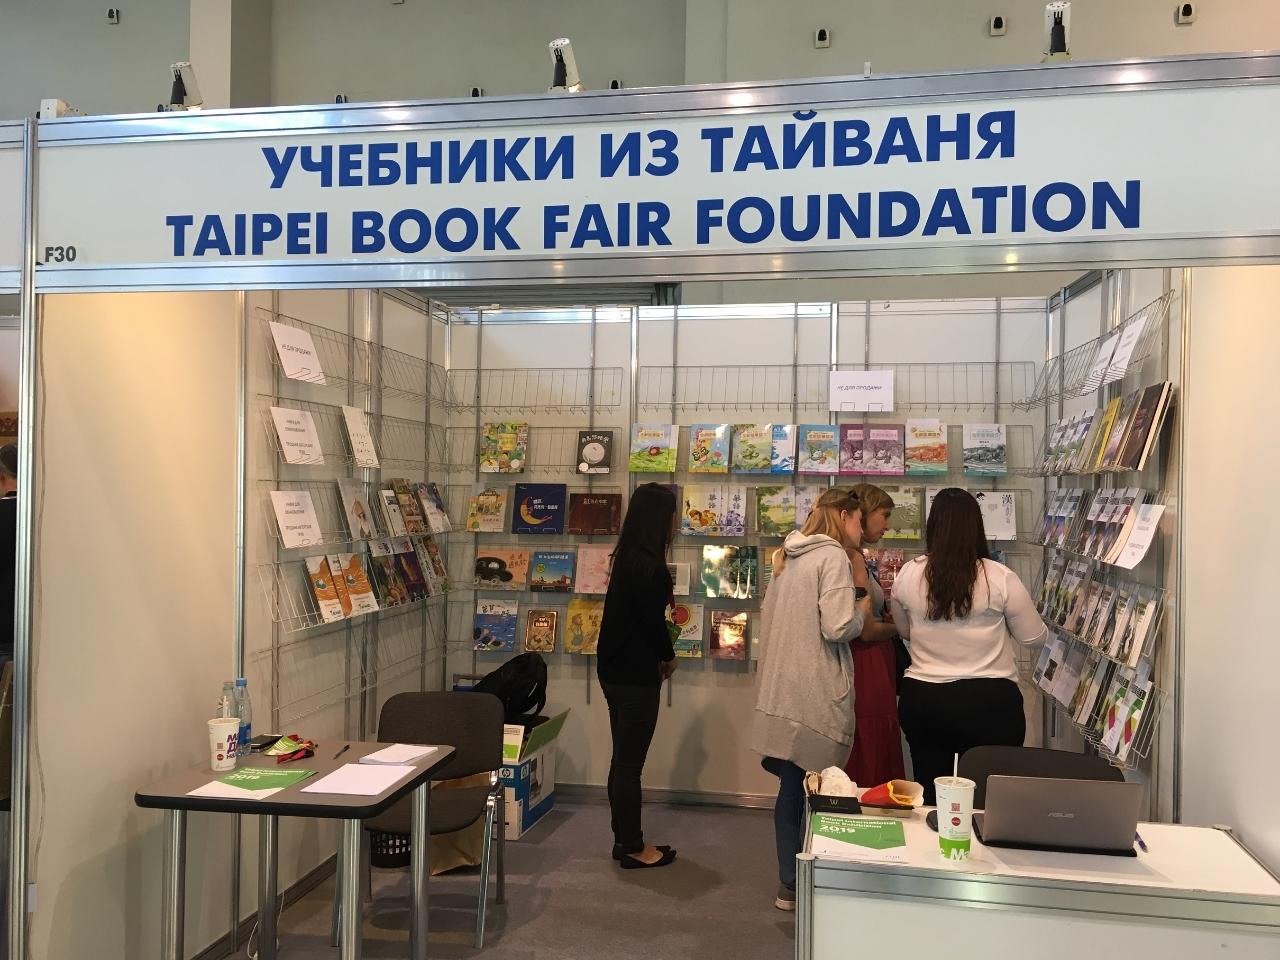 Тайваньский книжный фонд принял участие в 31-ой Московской международной книжной выставке-ярмарке. Посетителям выставки были представлены лучшие учебники Тайваня. 